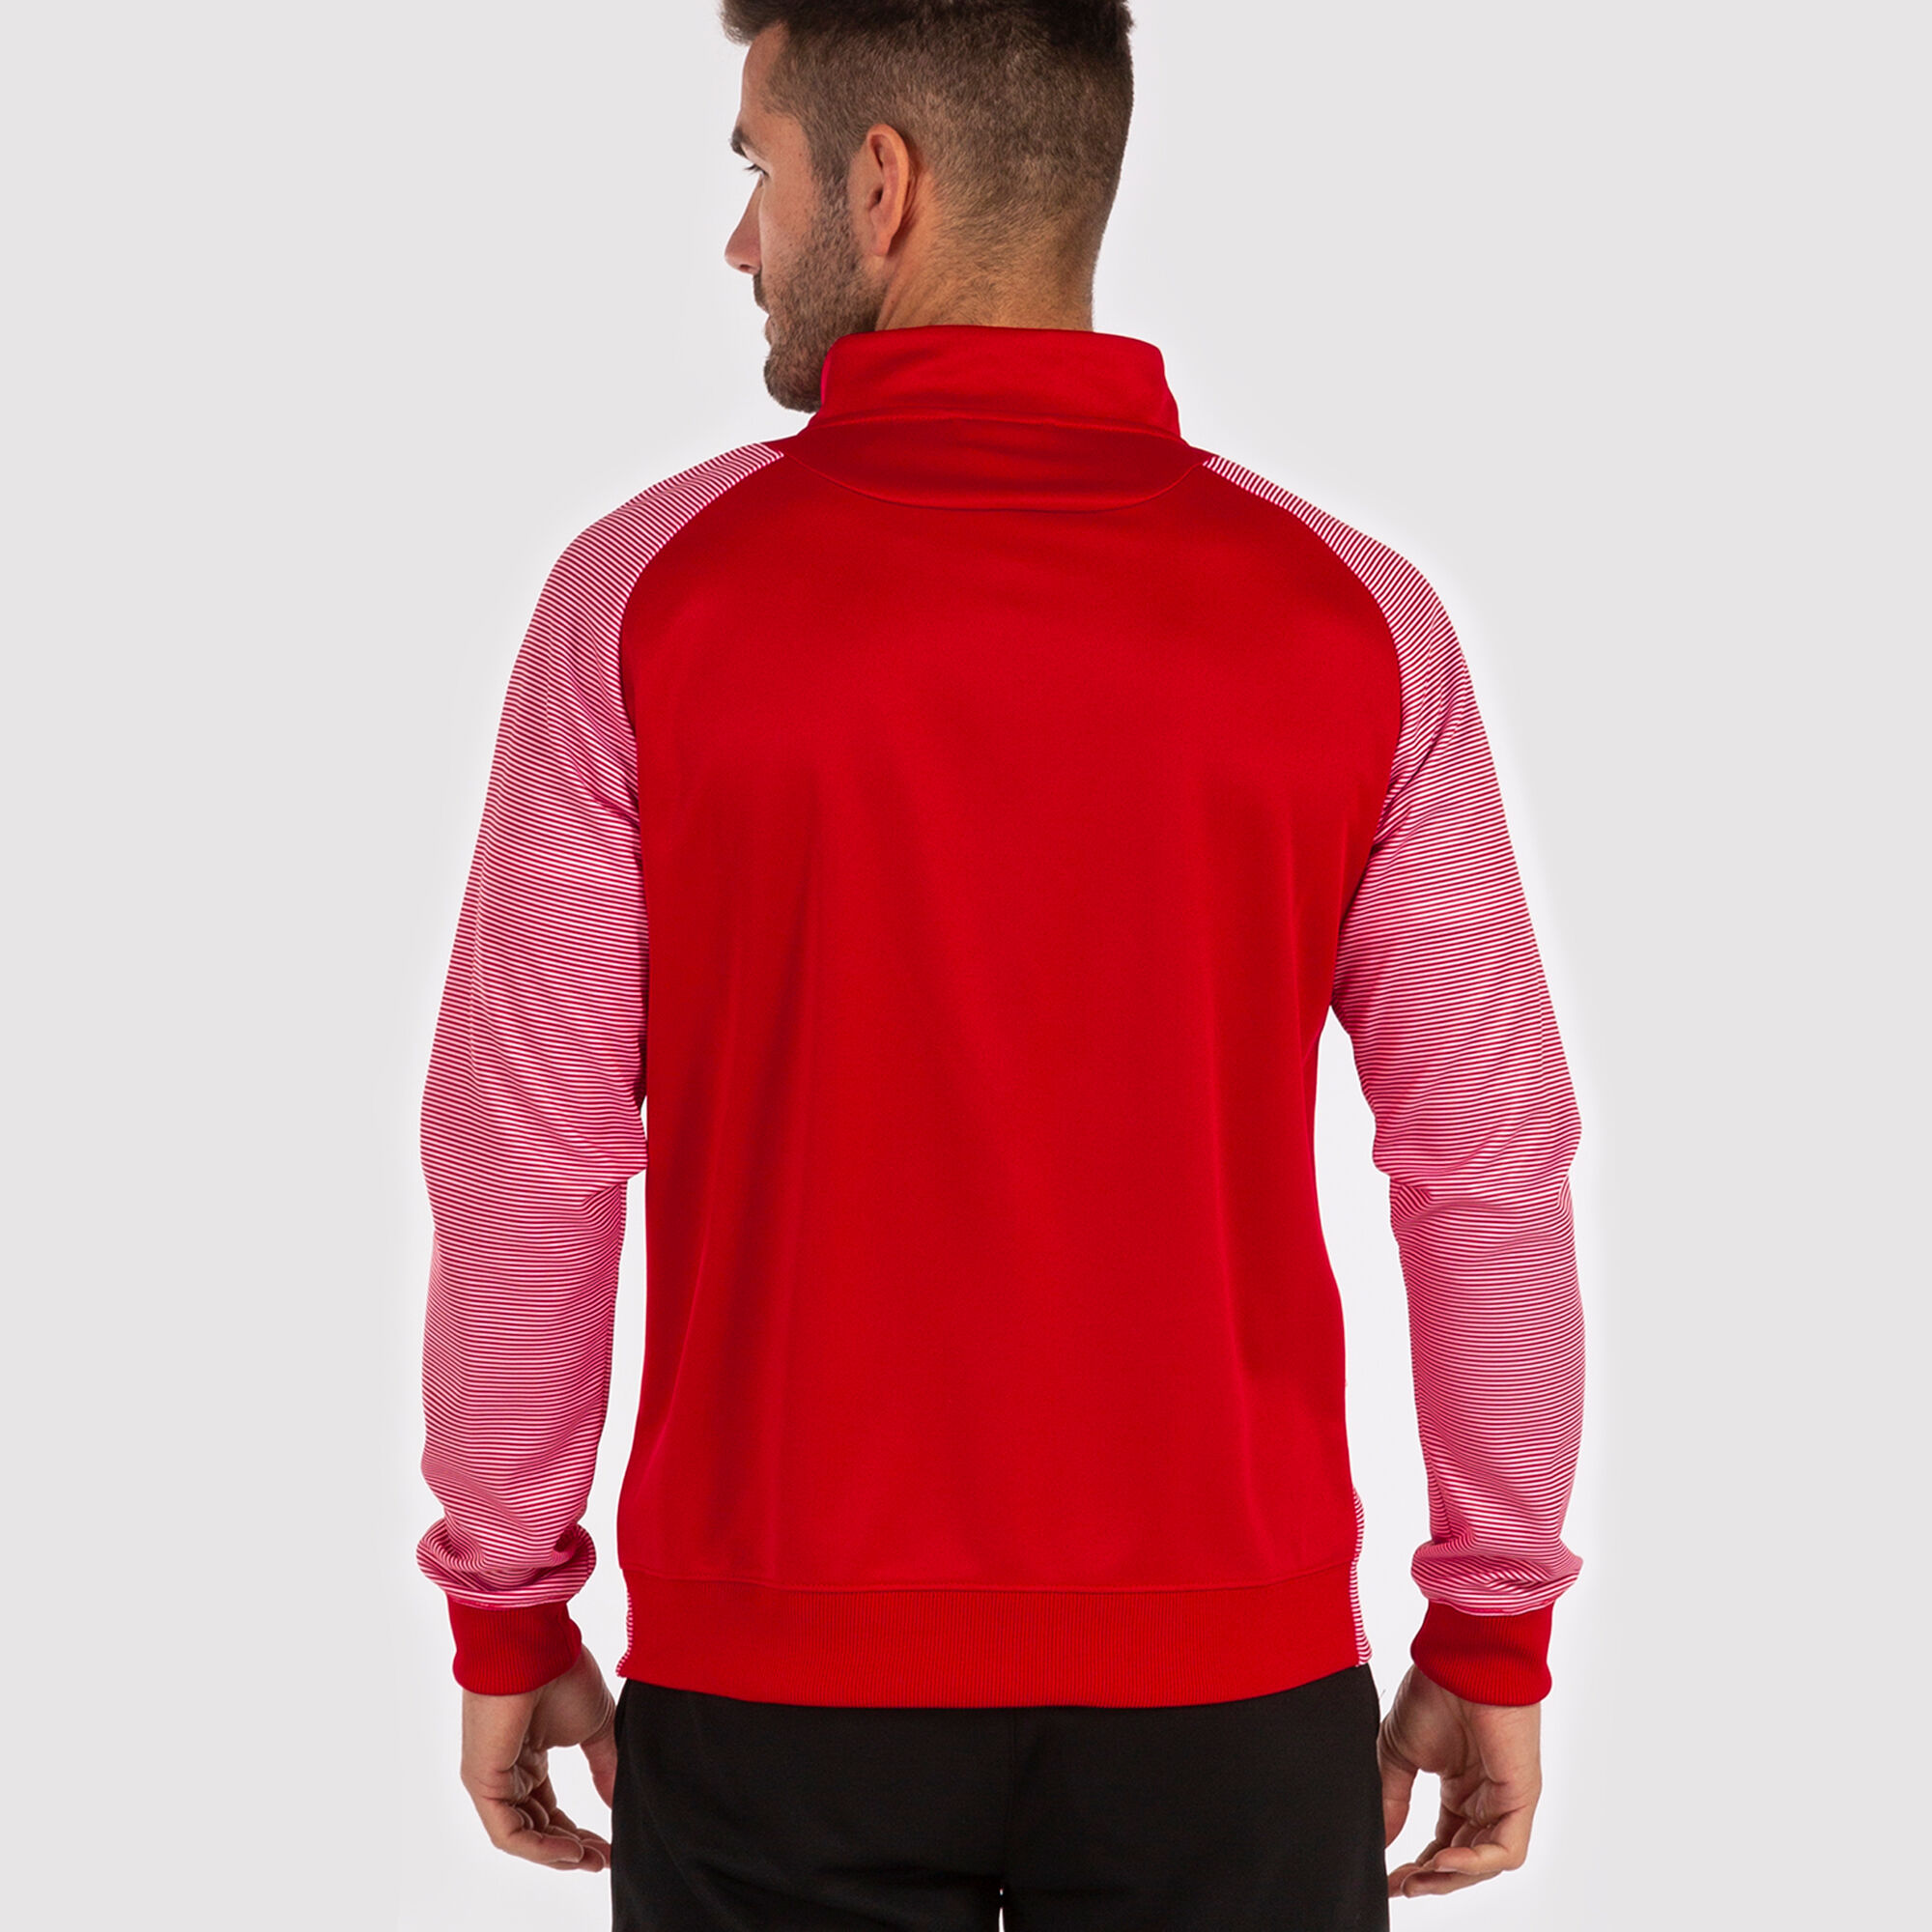 Jachetă bărbaȚi Essential II roșu alb